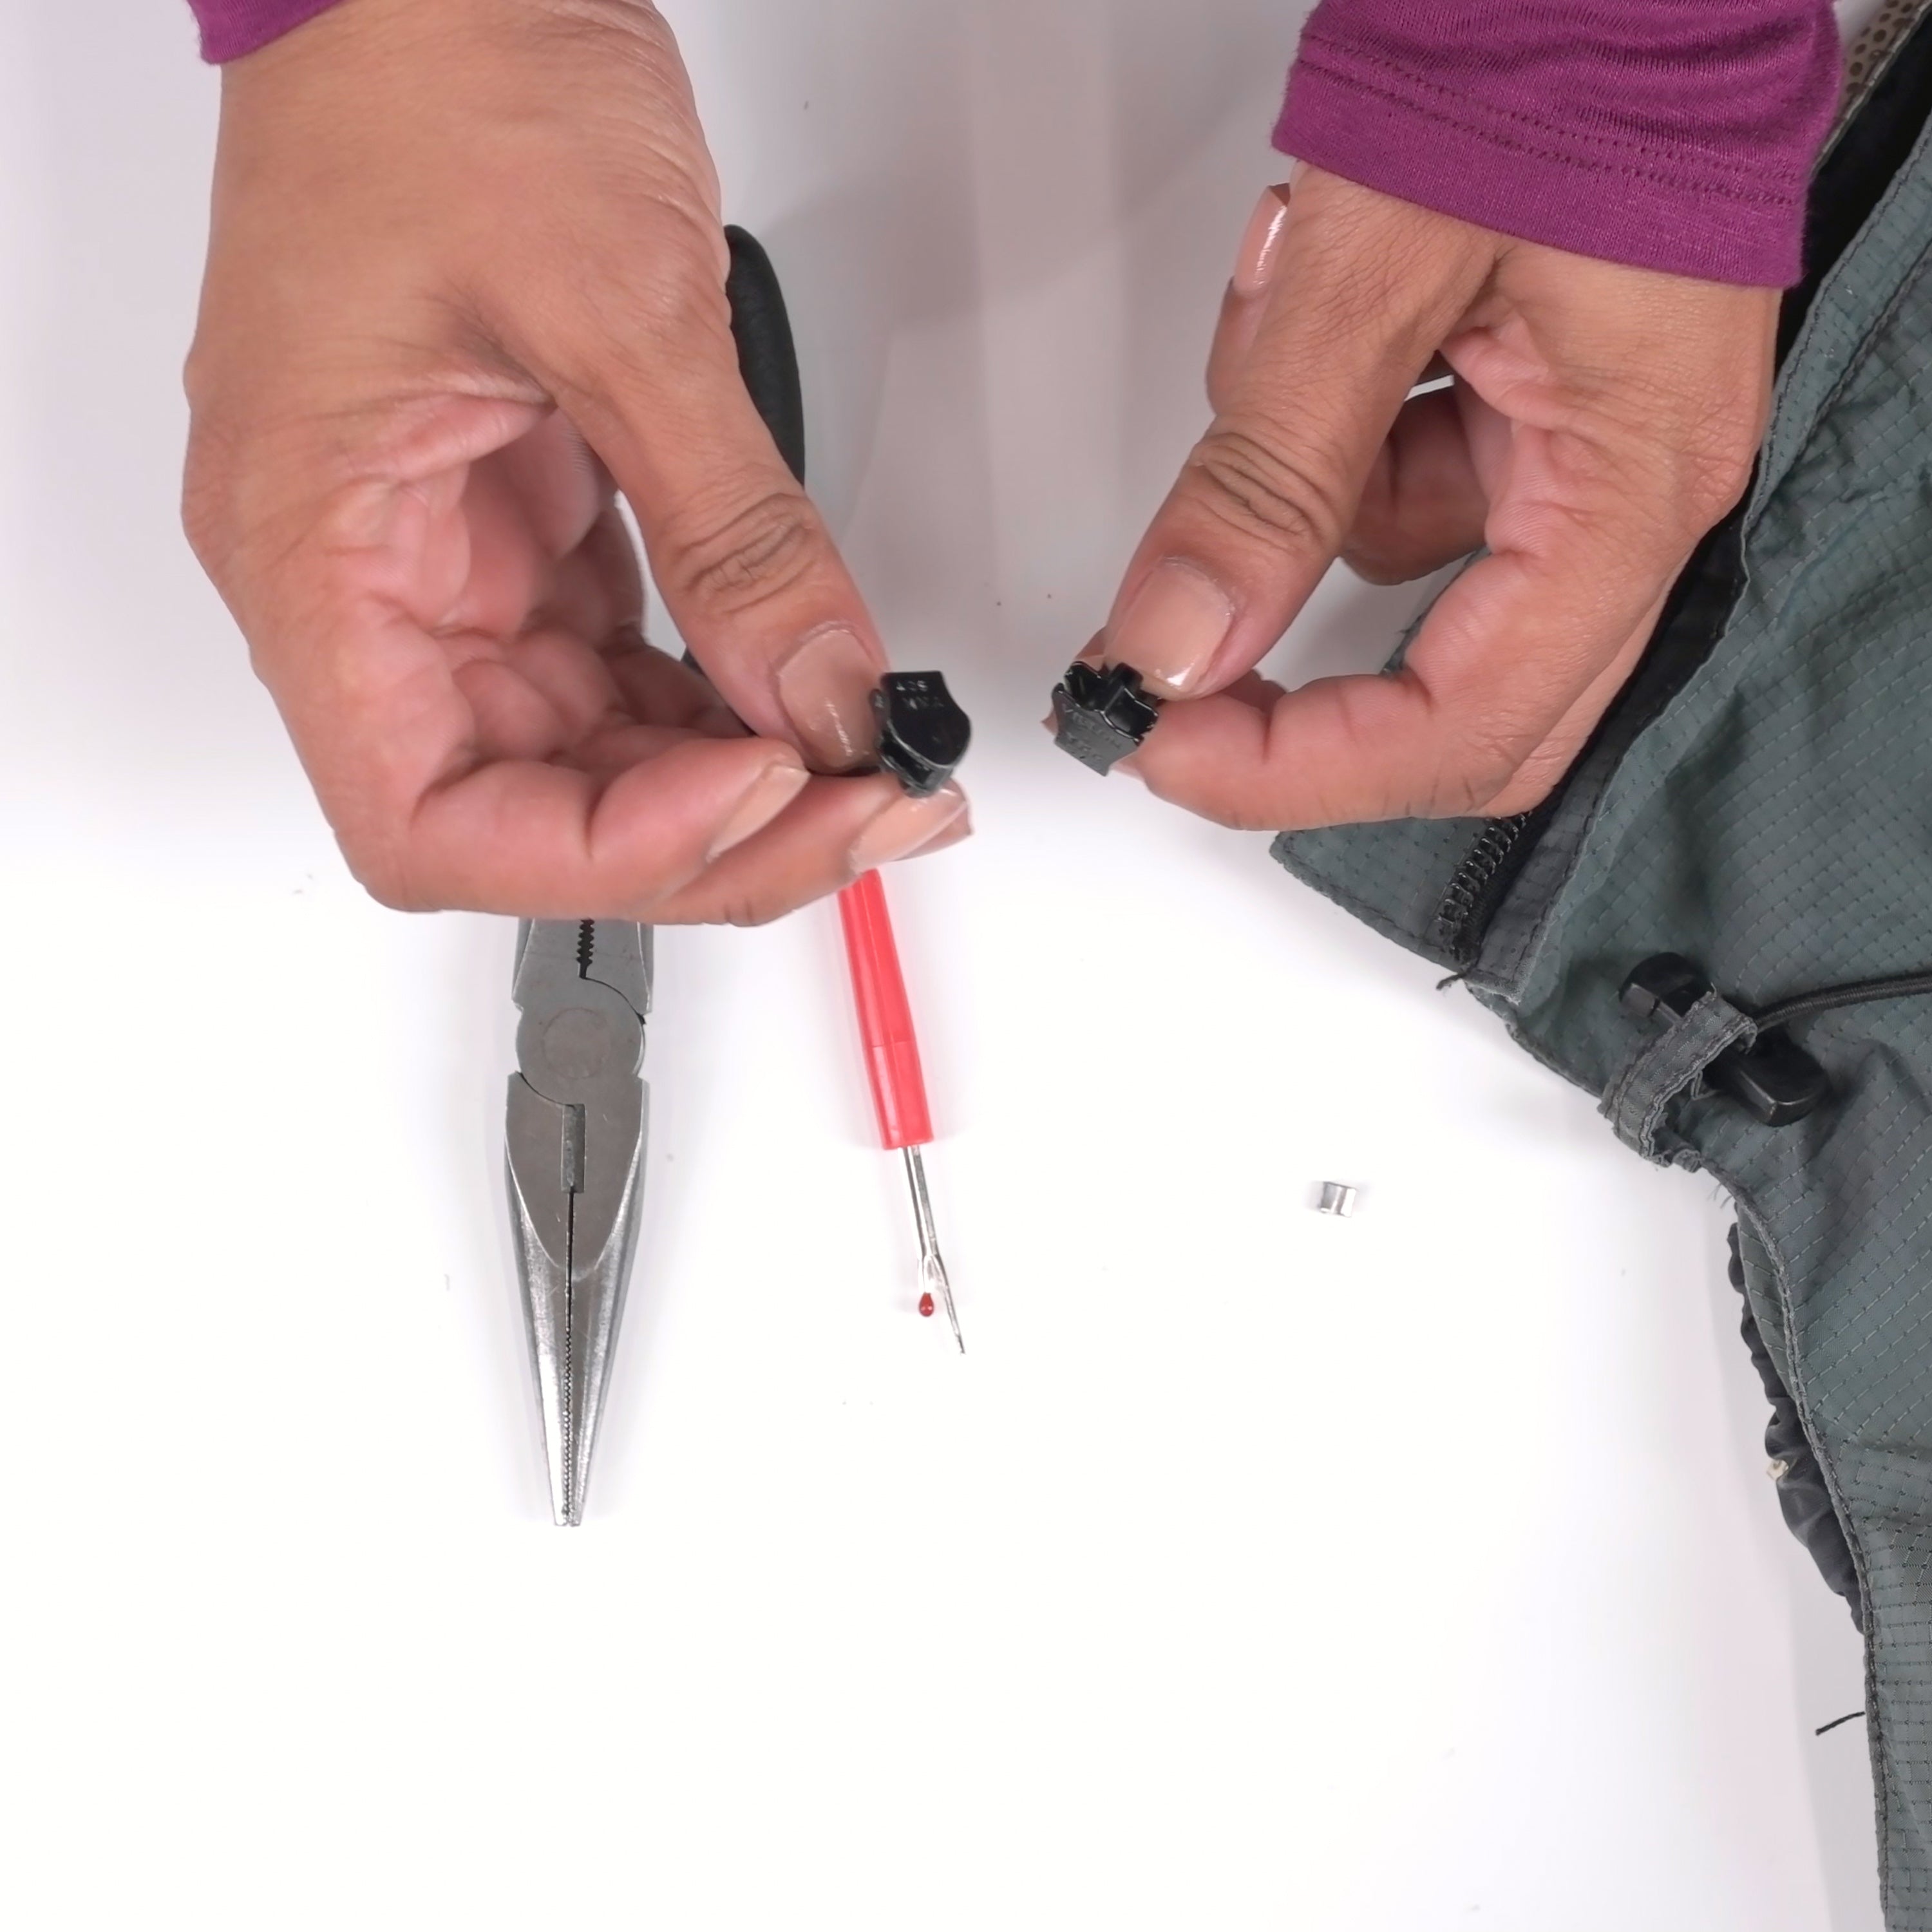 Gear Aid - Zipper Repair Kit